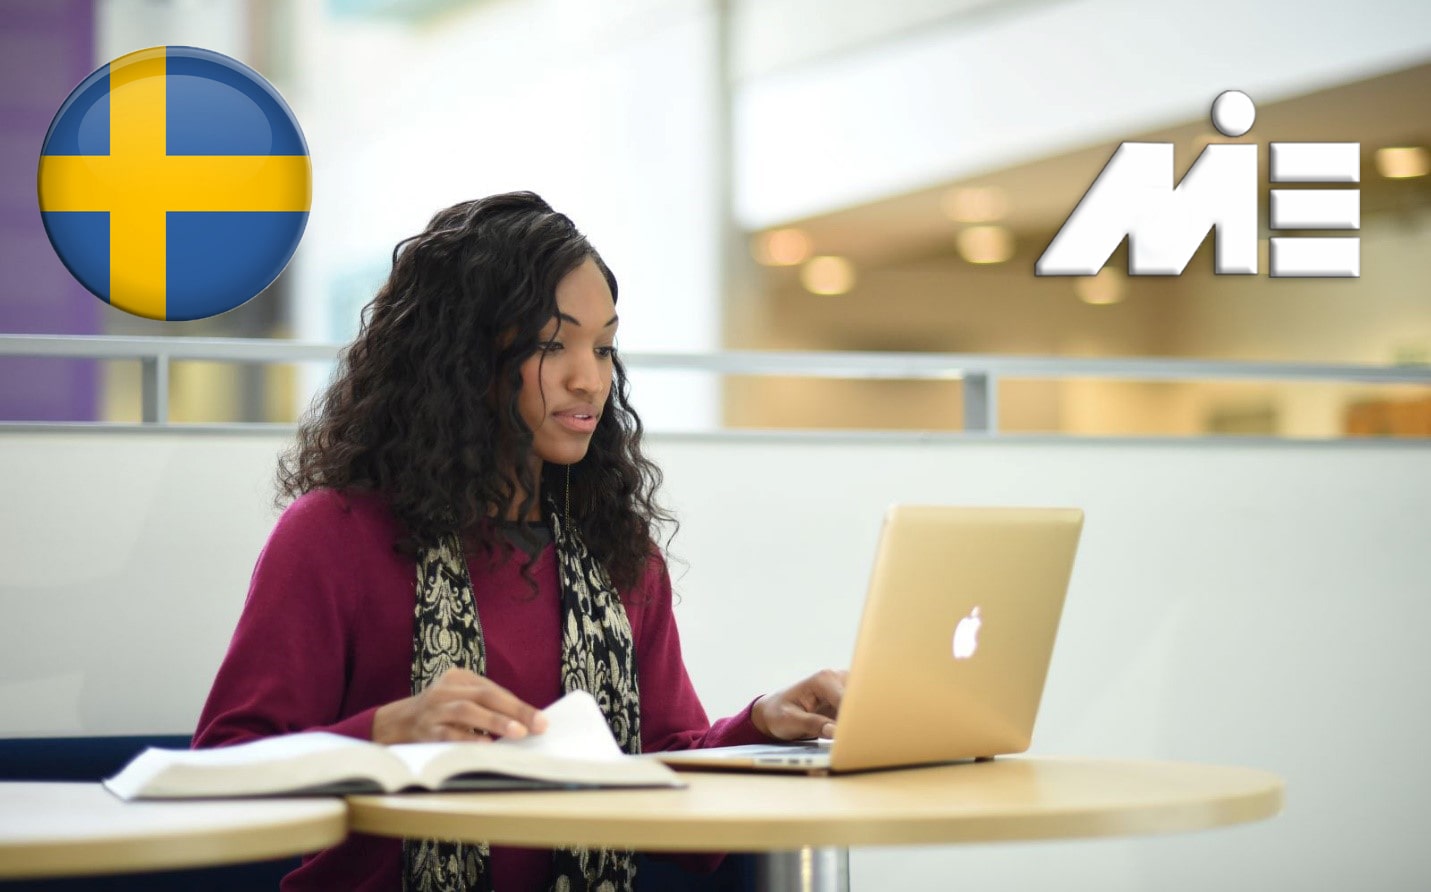 تحصیل در سوئد - ویزای تحصیلی سوئد - مهاچرت تحصیلی به سوئد - مهاجرت به سوئد - اقامت سوئد